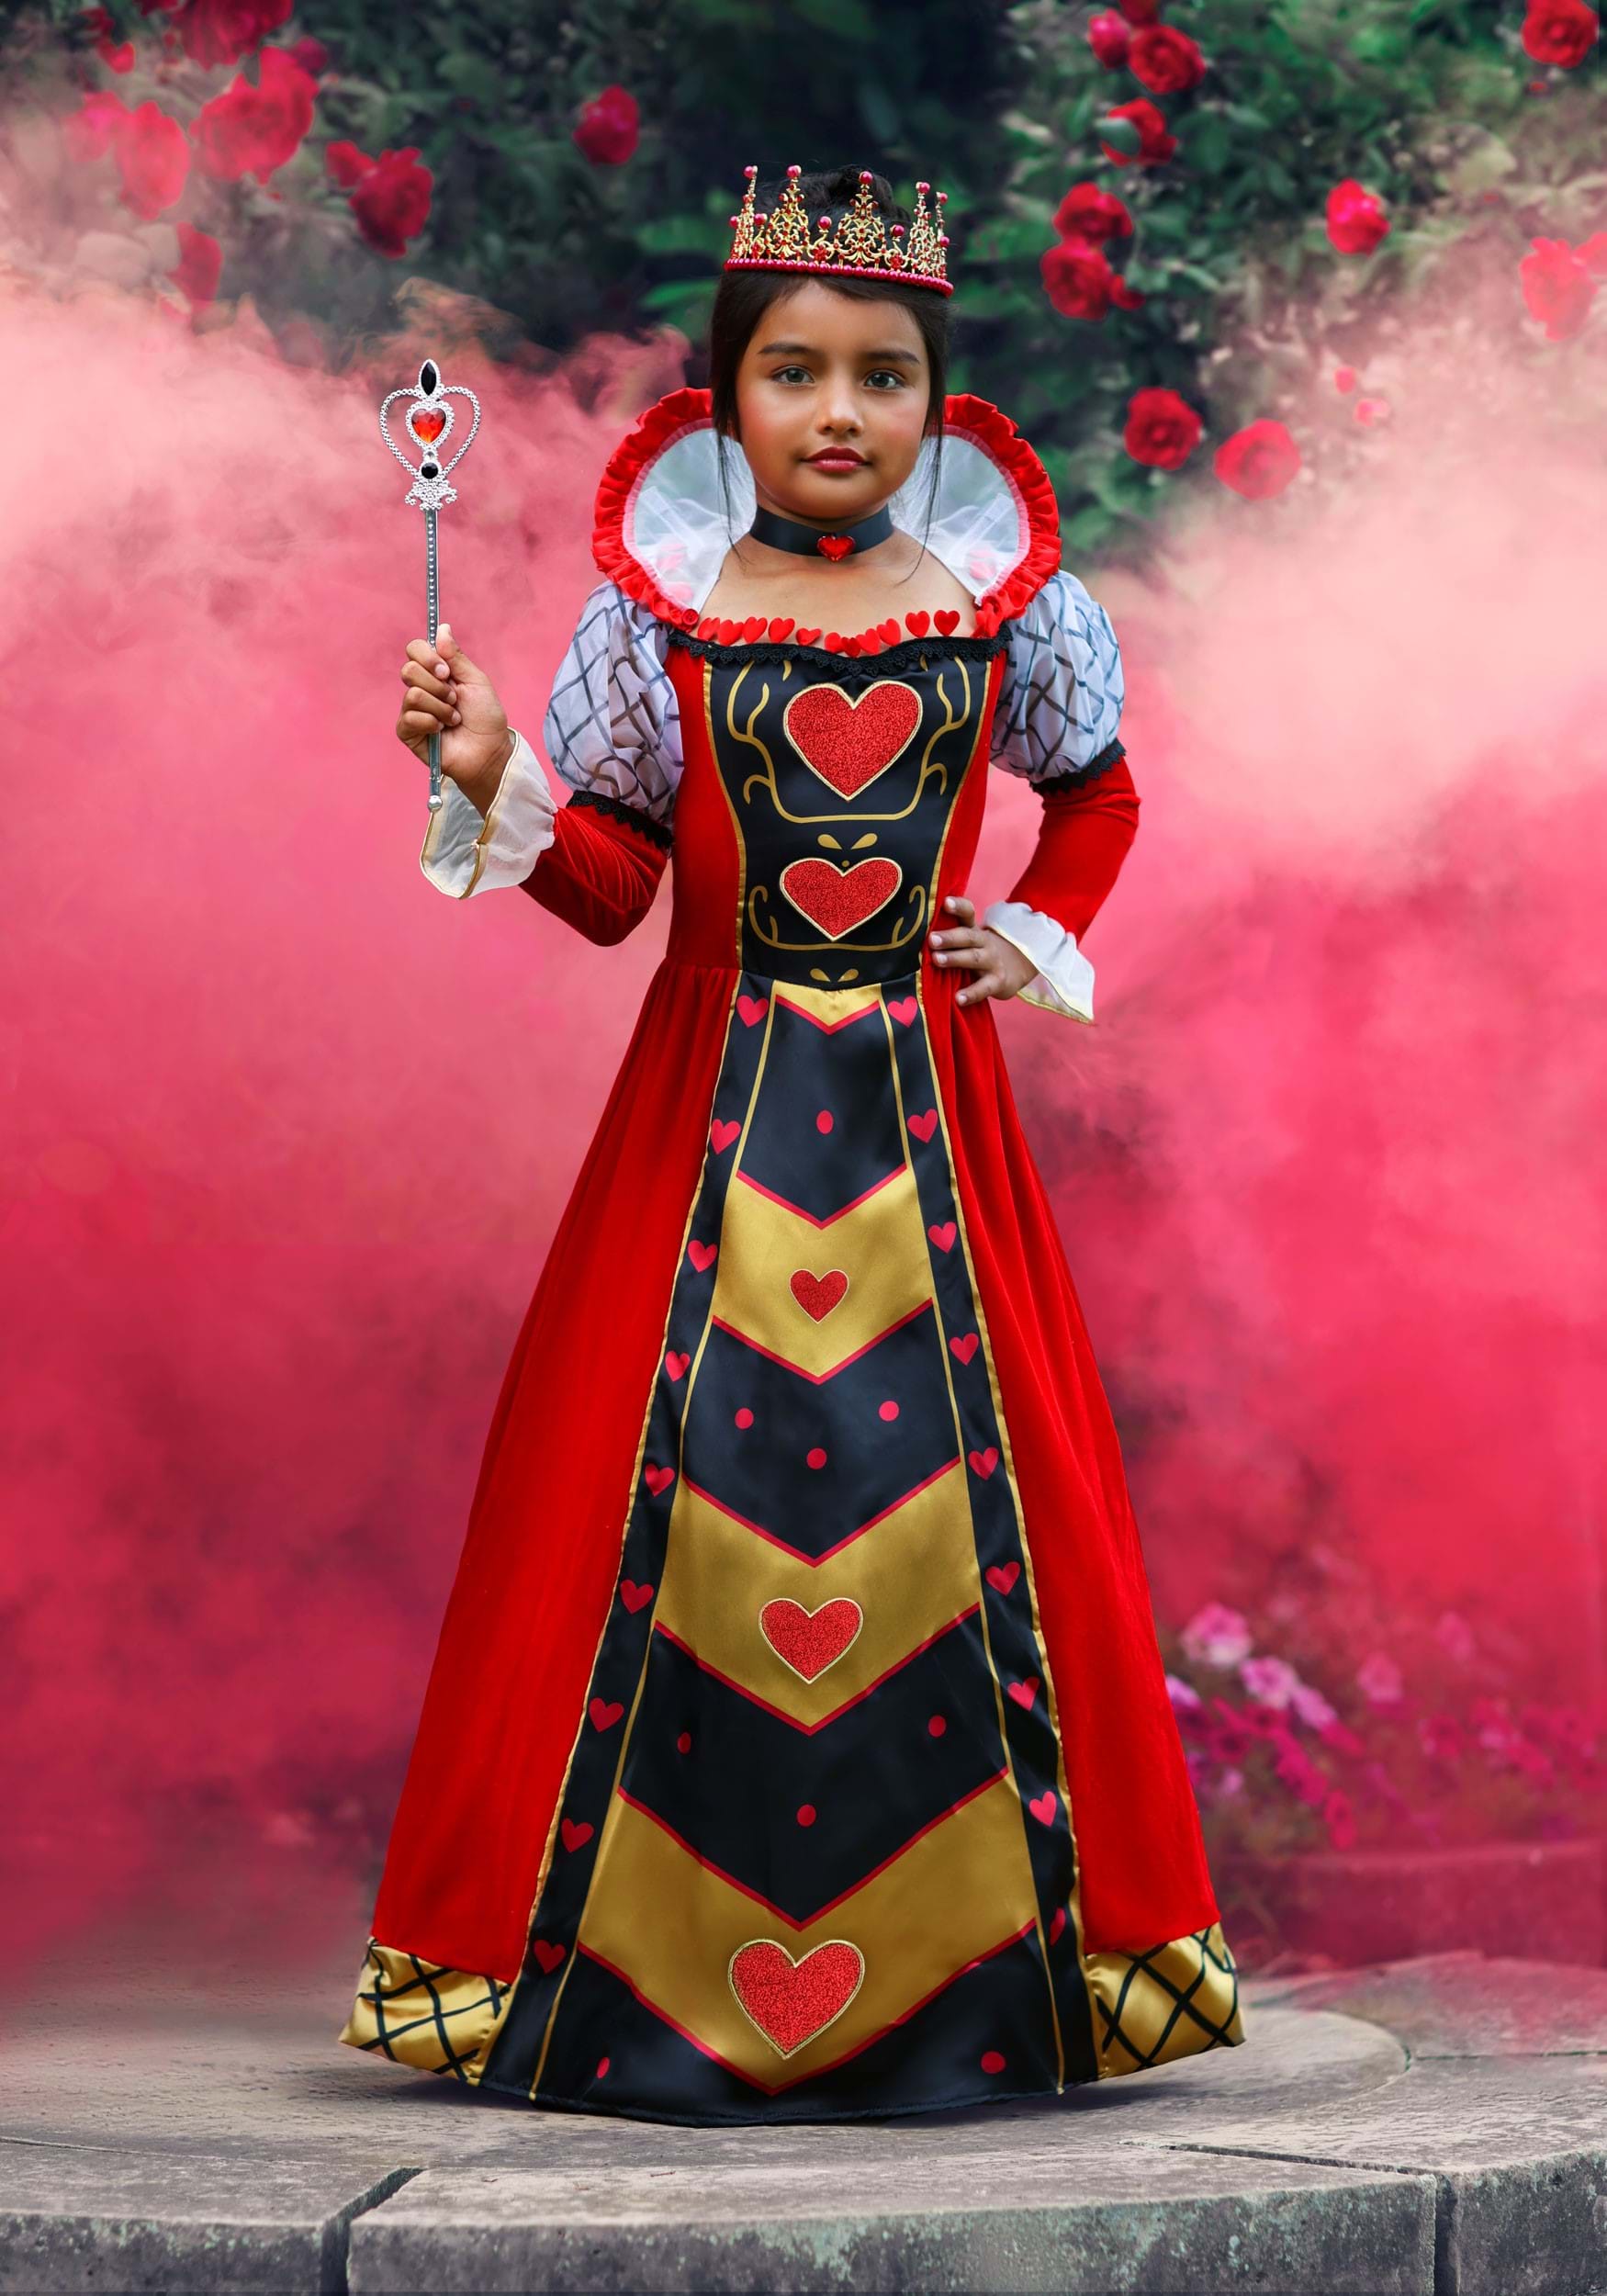 Premium Queen of Hearts Girl's Costume Dress